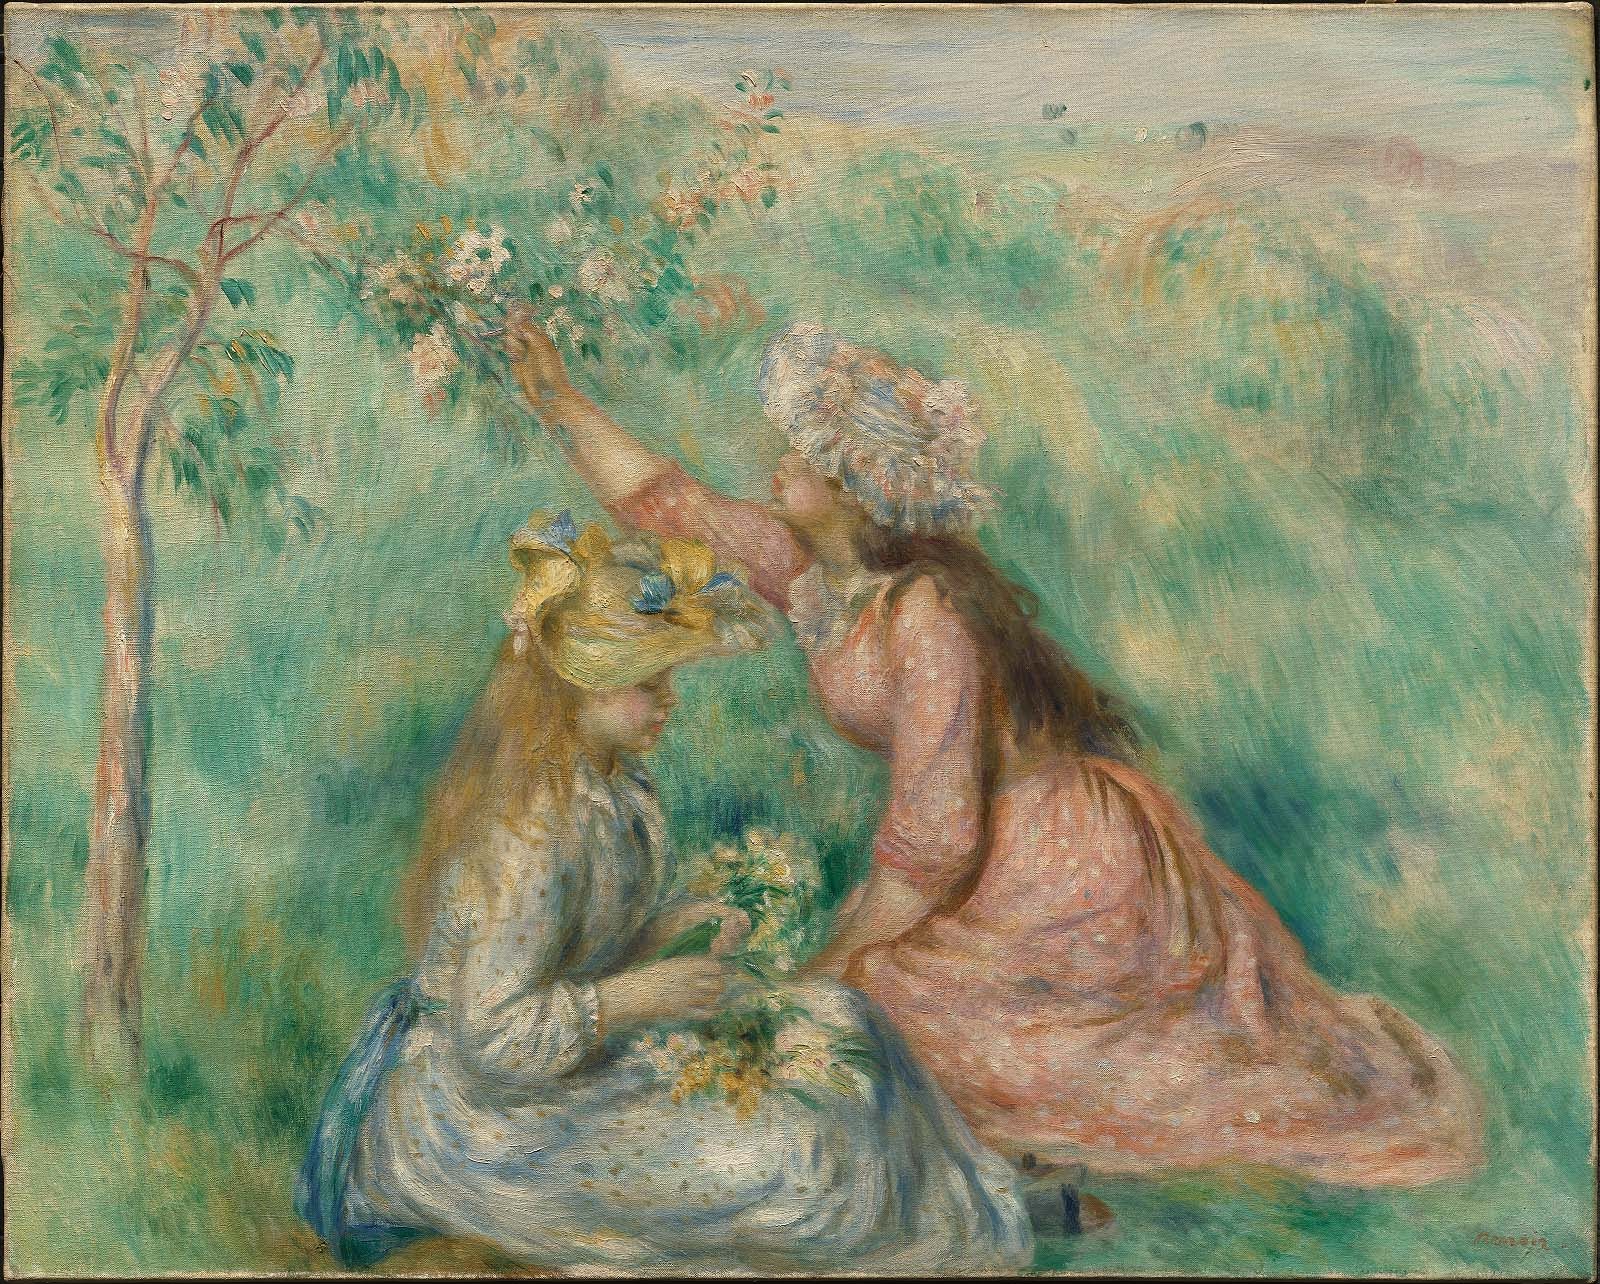 Pierre+Auguste+Renoir-1841-1-19 (495).jpg